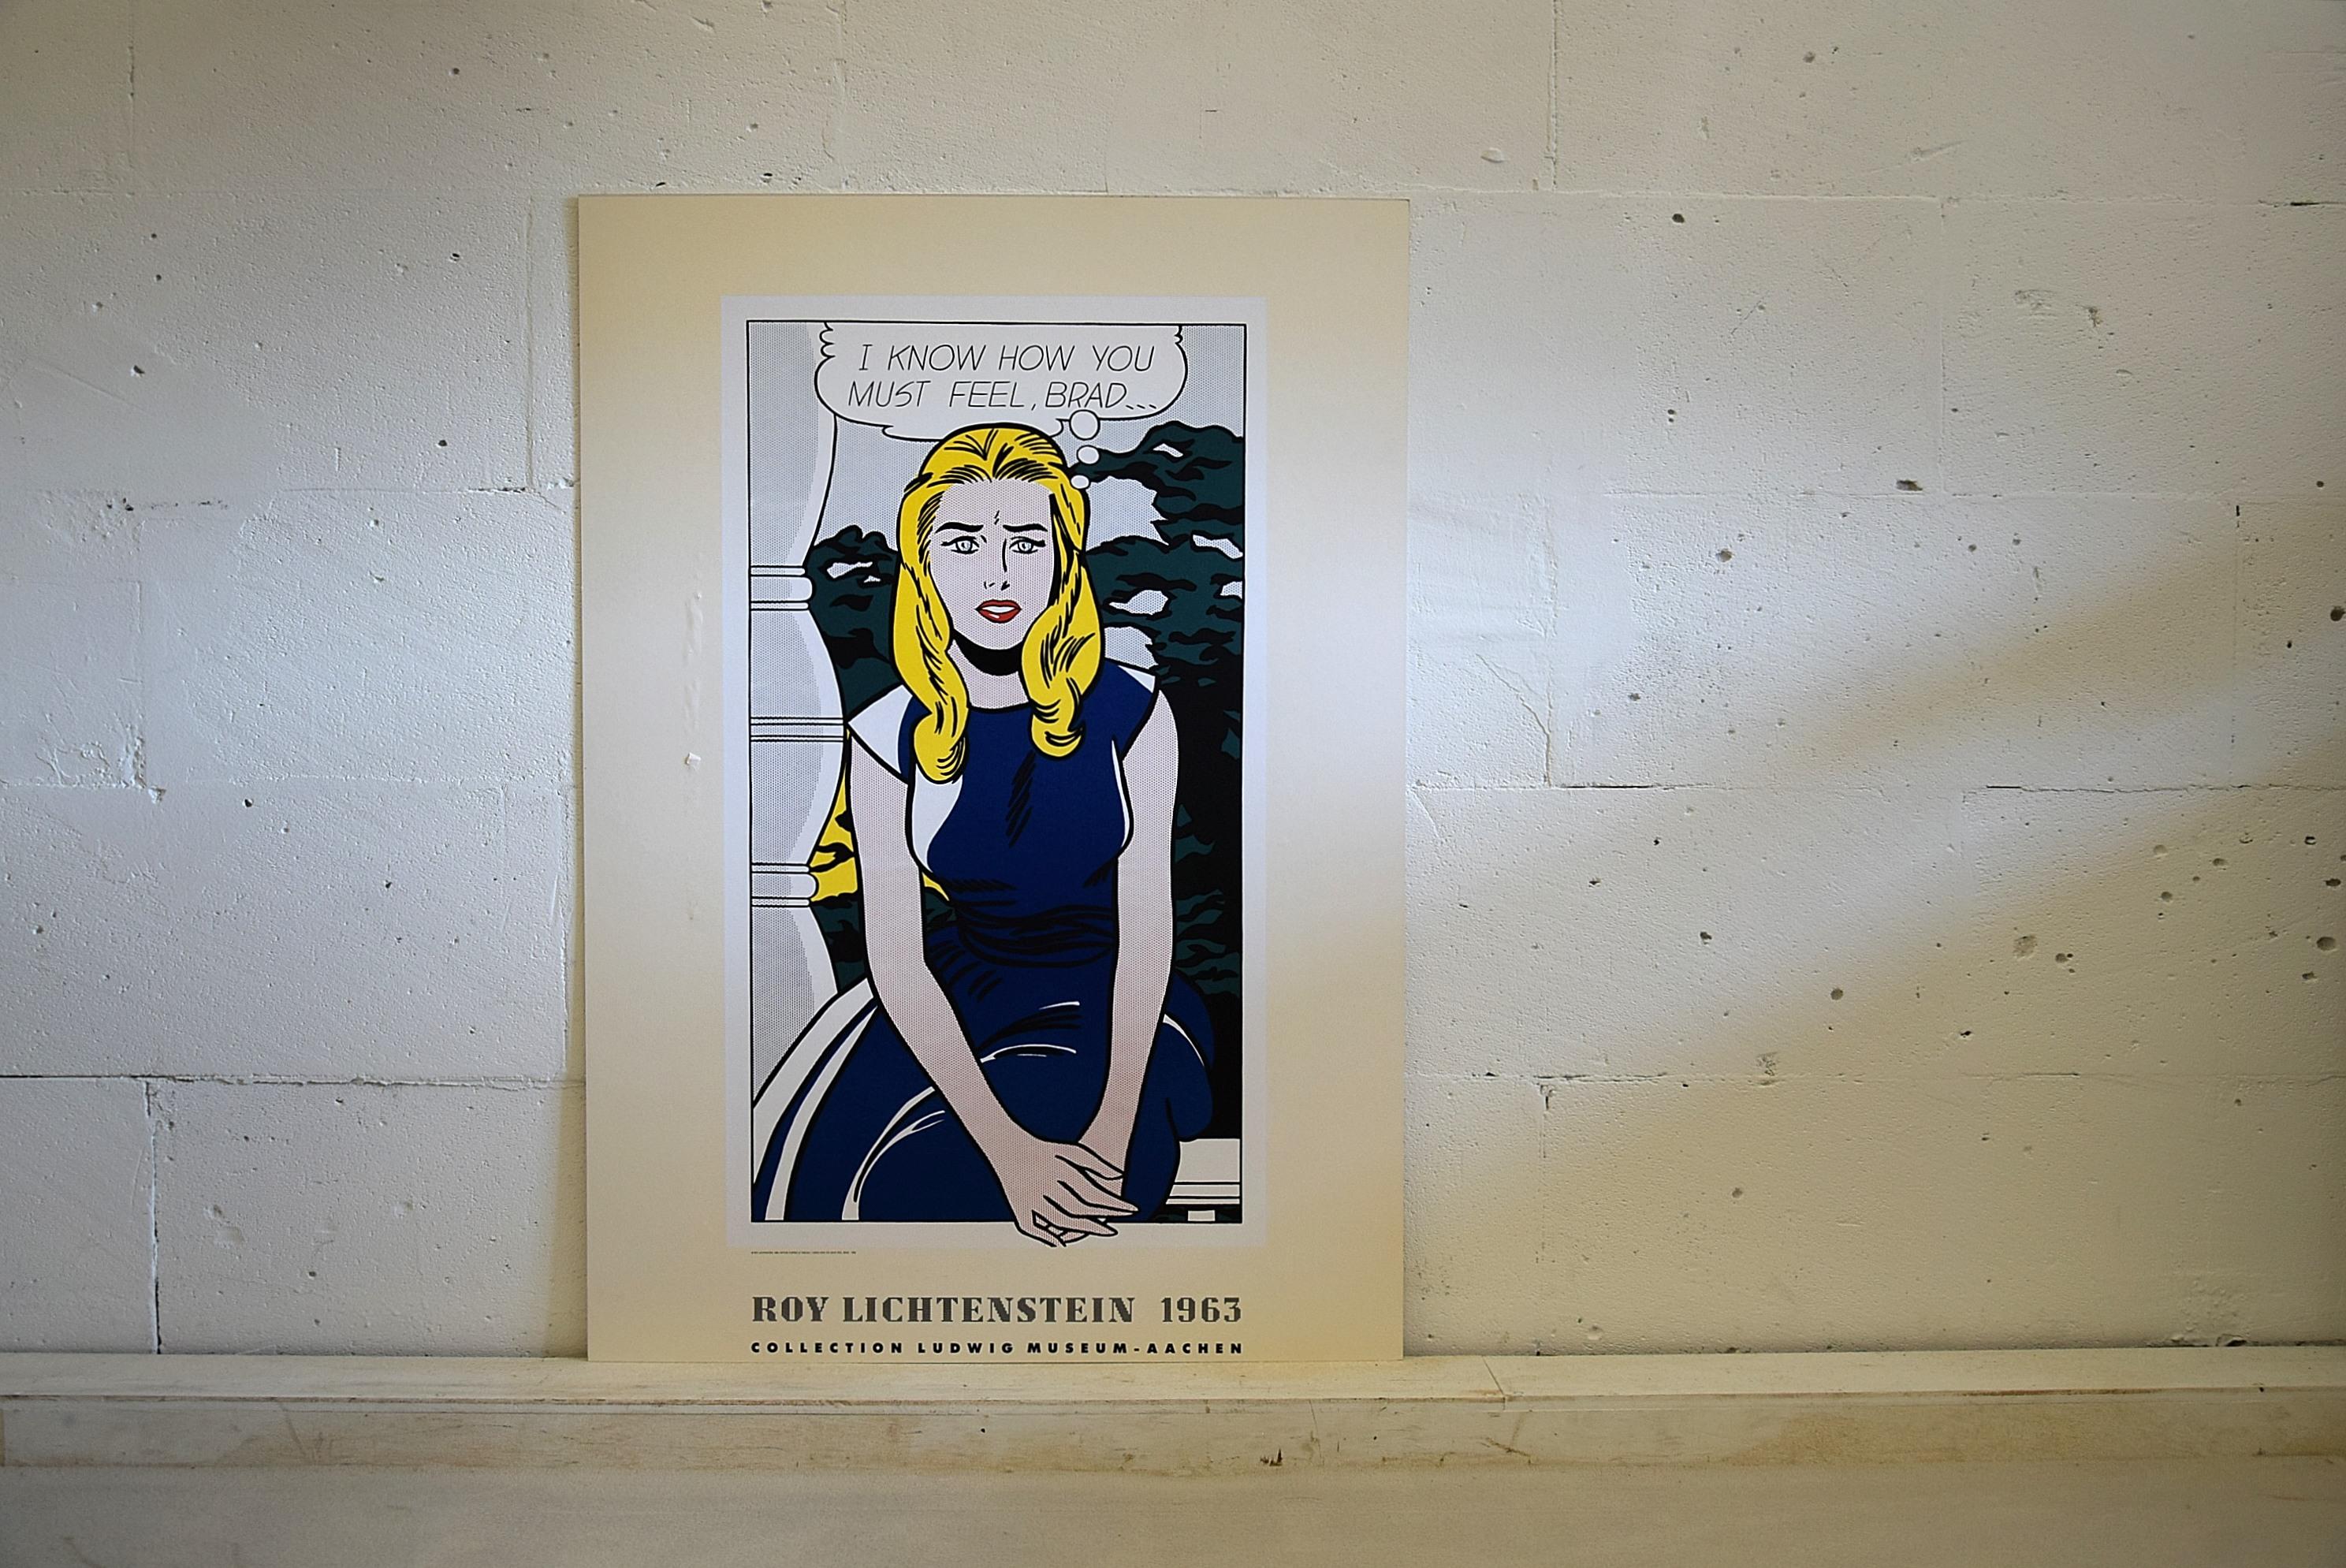 roy lichtenstein exhibition poster